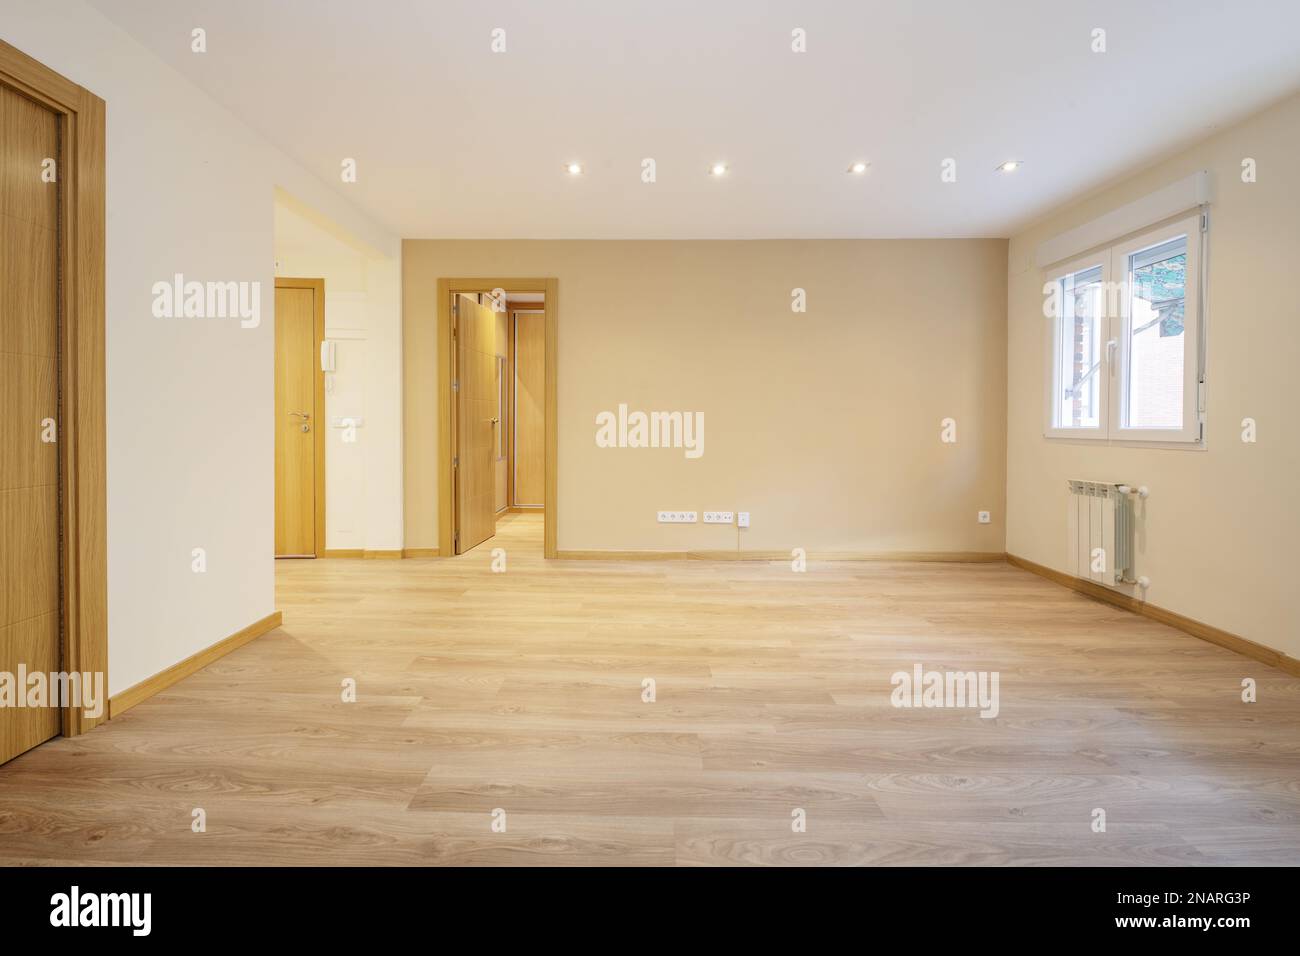 Salon vide d'un étage avec plancher flottant en chêne, portes d'accès aux autres pièces, lampes intégrées dans le faux plafond en plâtre et aluminium blanc Banque D'Images